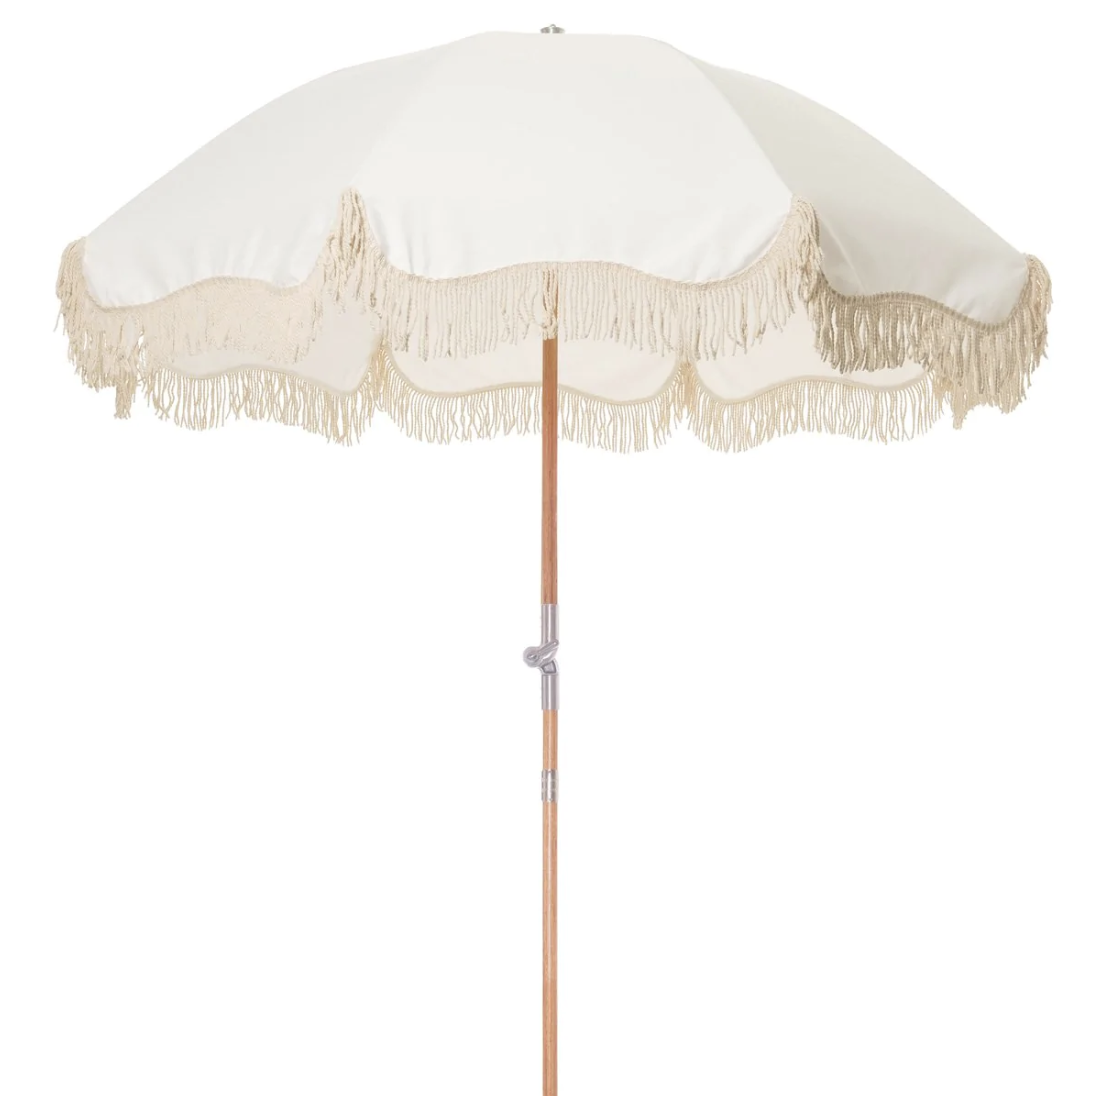 Business and Pleasure Premium Beach Umbrella Antique White